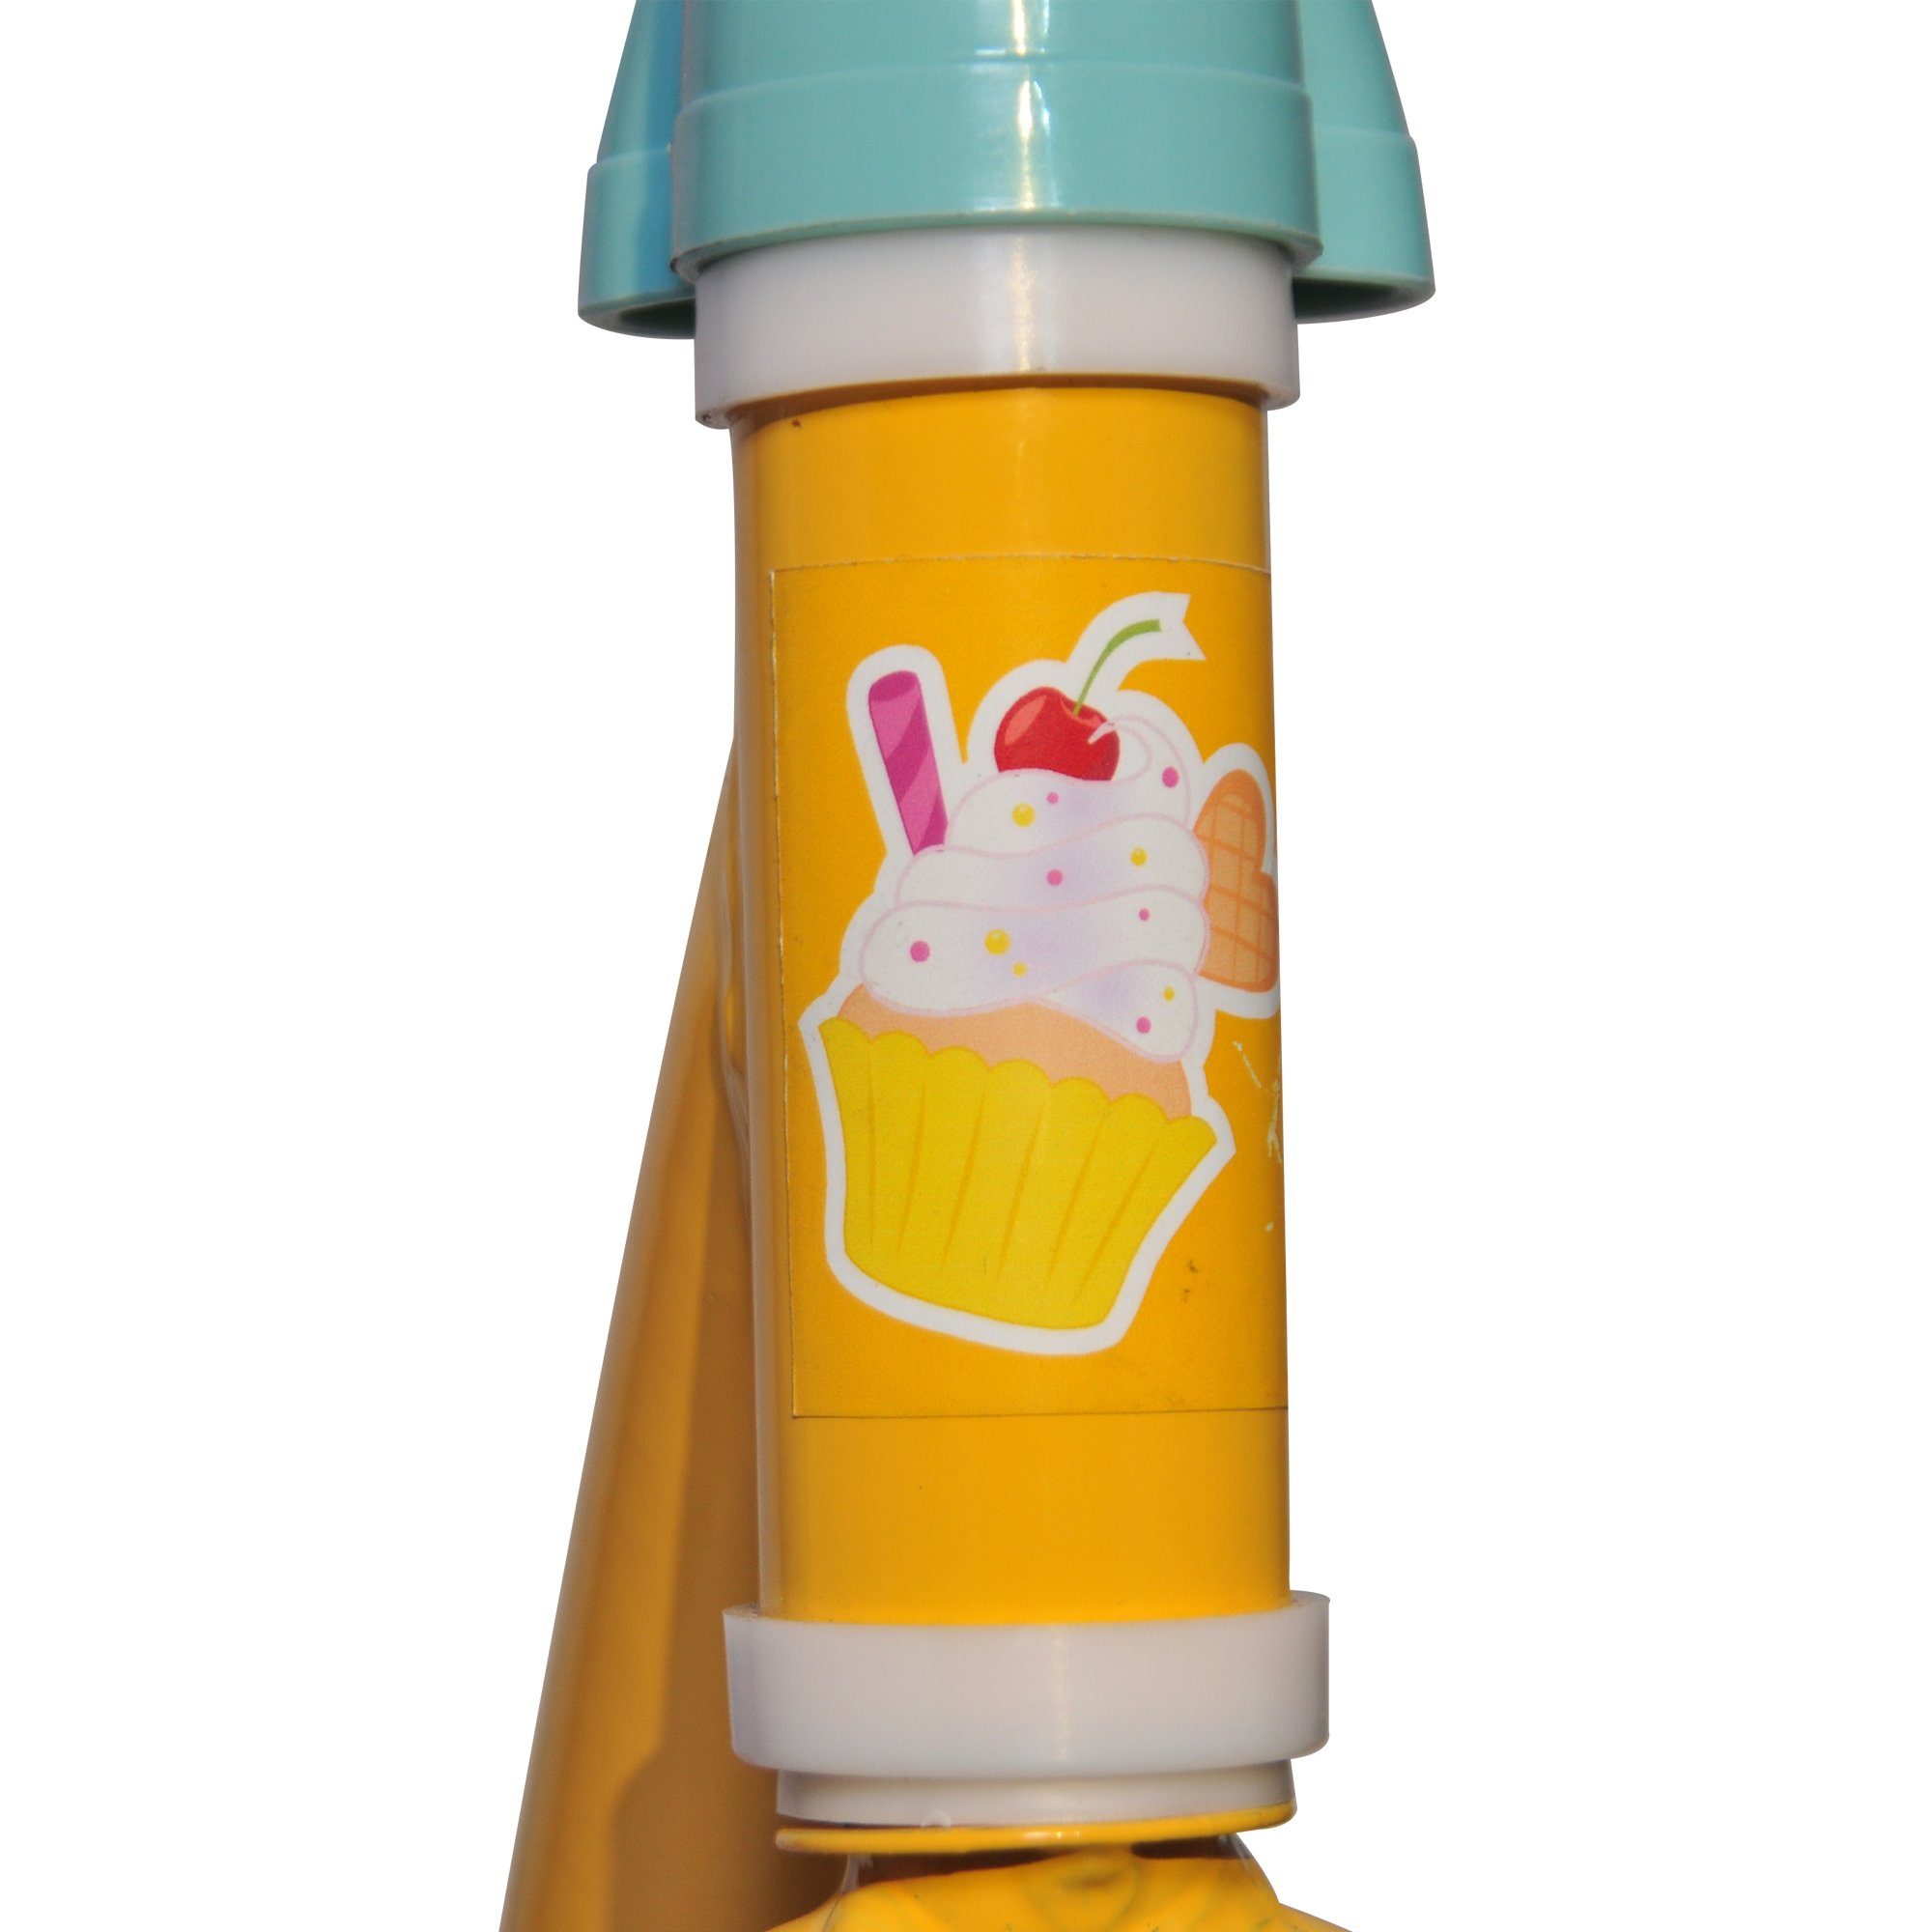 Miniscooter Rosa - Babies Cry Gelb 2 - Reifen Jahre - 6 und - Kinder - Kunststofffelgen -